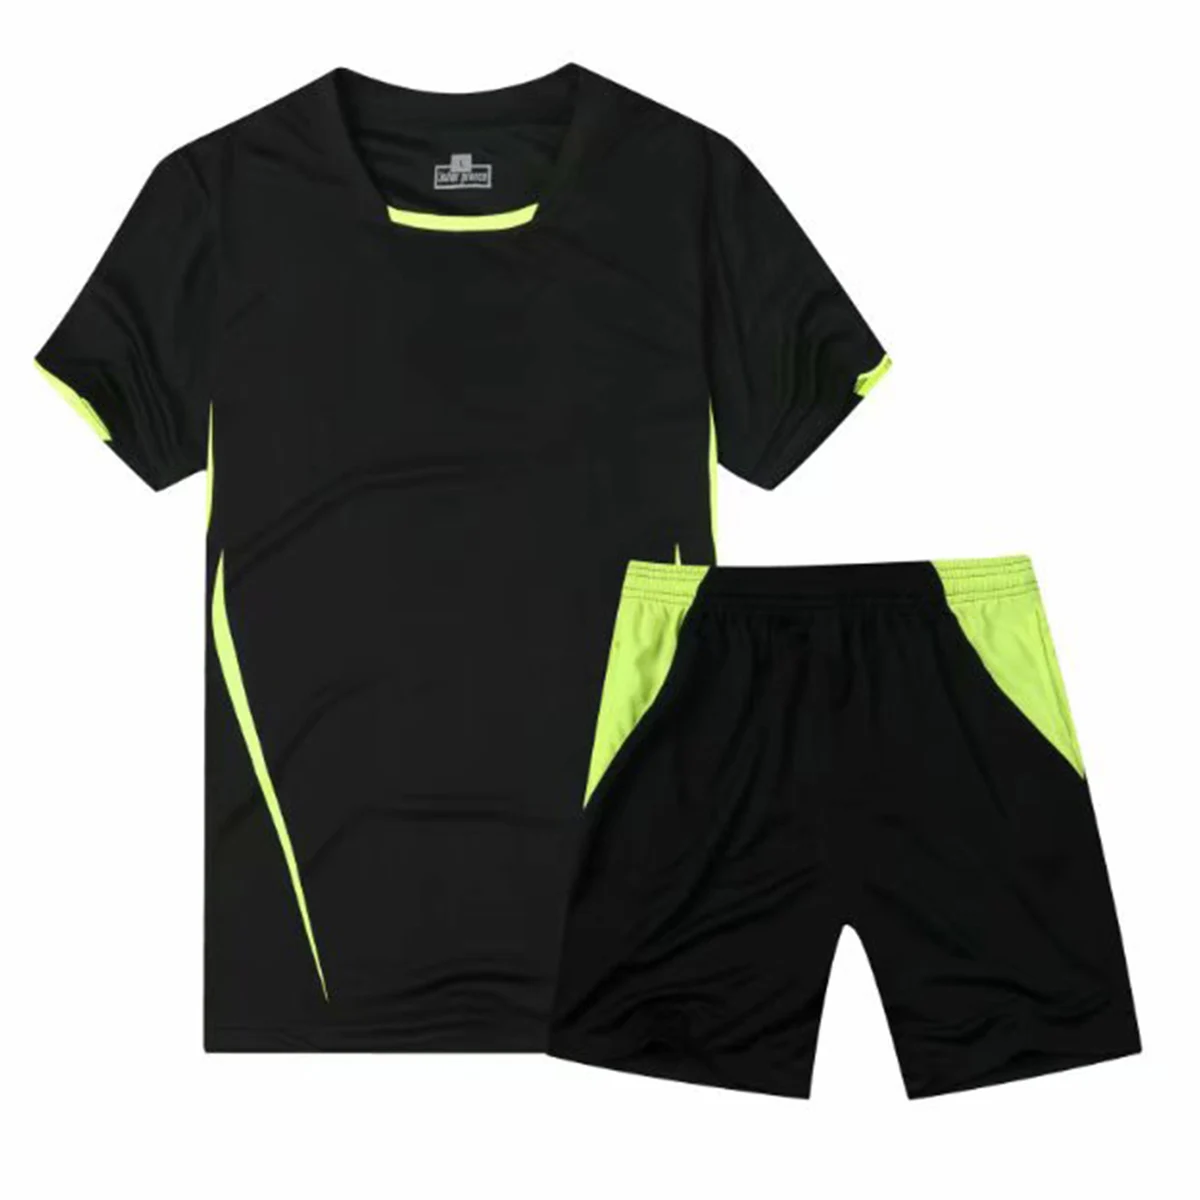 Короткий рукав обучение футбольная спортивная одежда костюм для тренировок футбол спортивный костюм для футбольных тренировок, изготовленный на заказ логотип, название - Цвет: Model 14